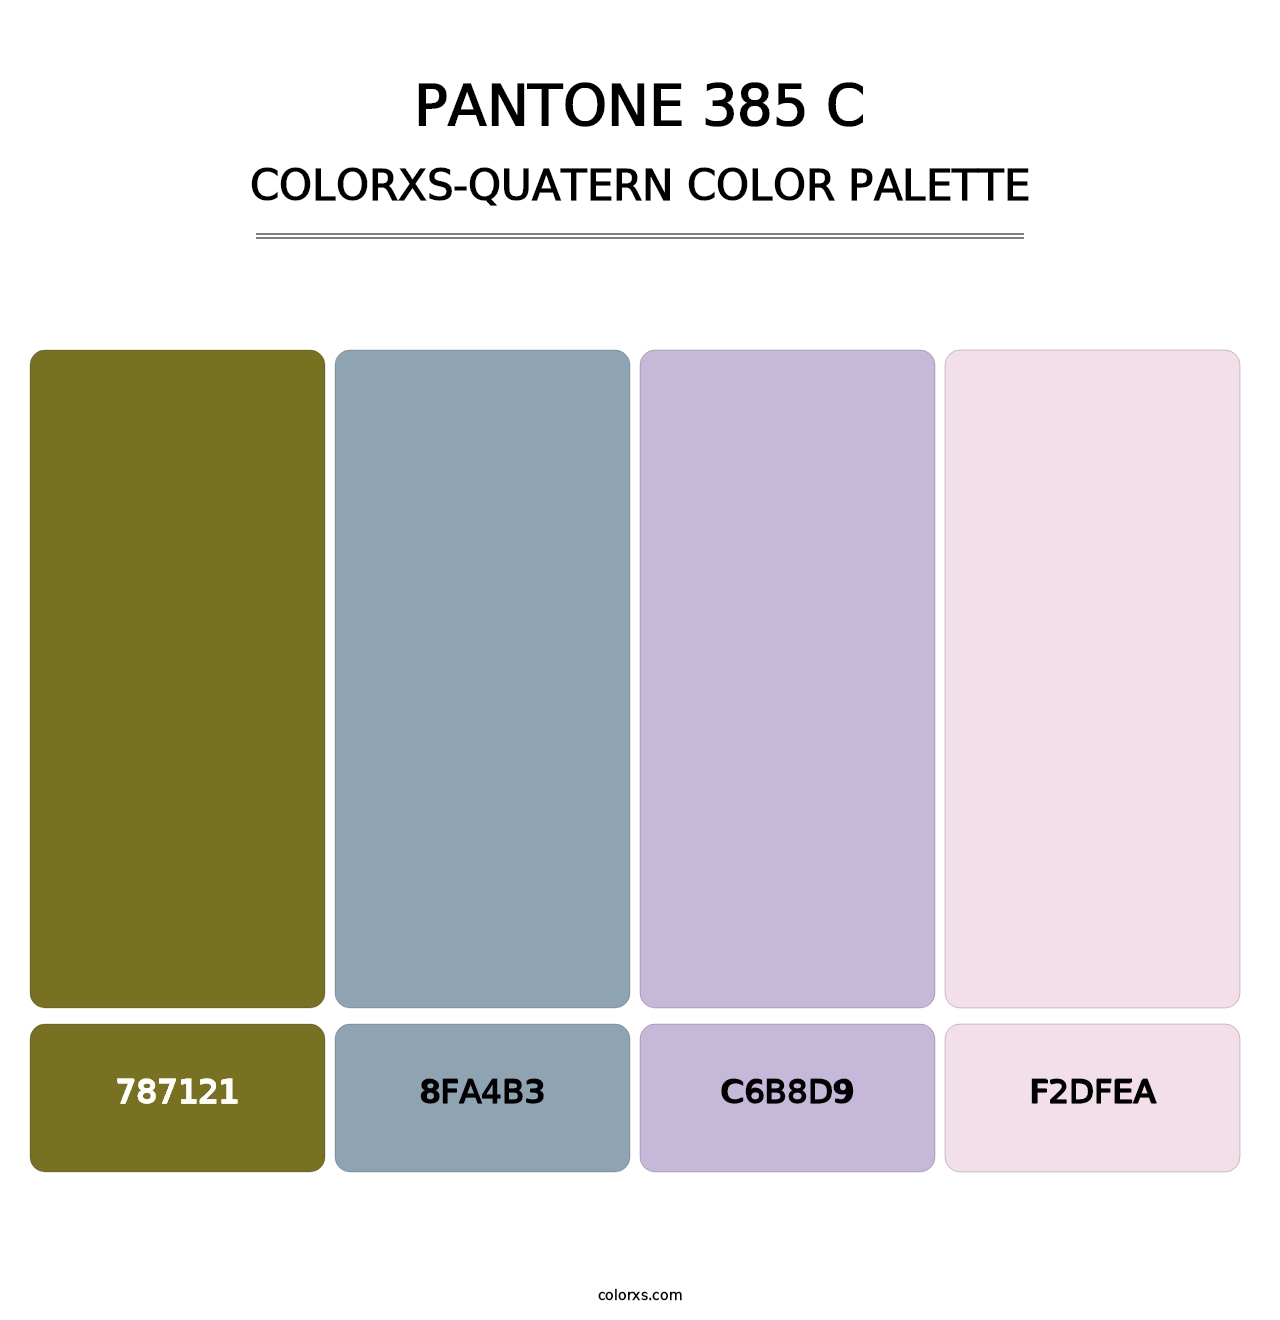 PANTONE 385 C - Colorxs Quatern Palette